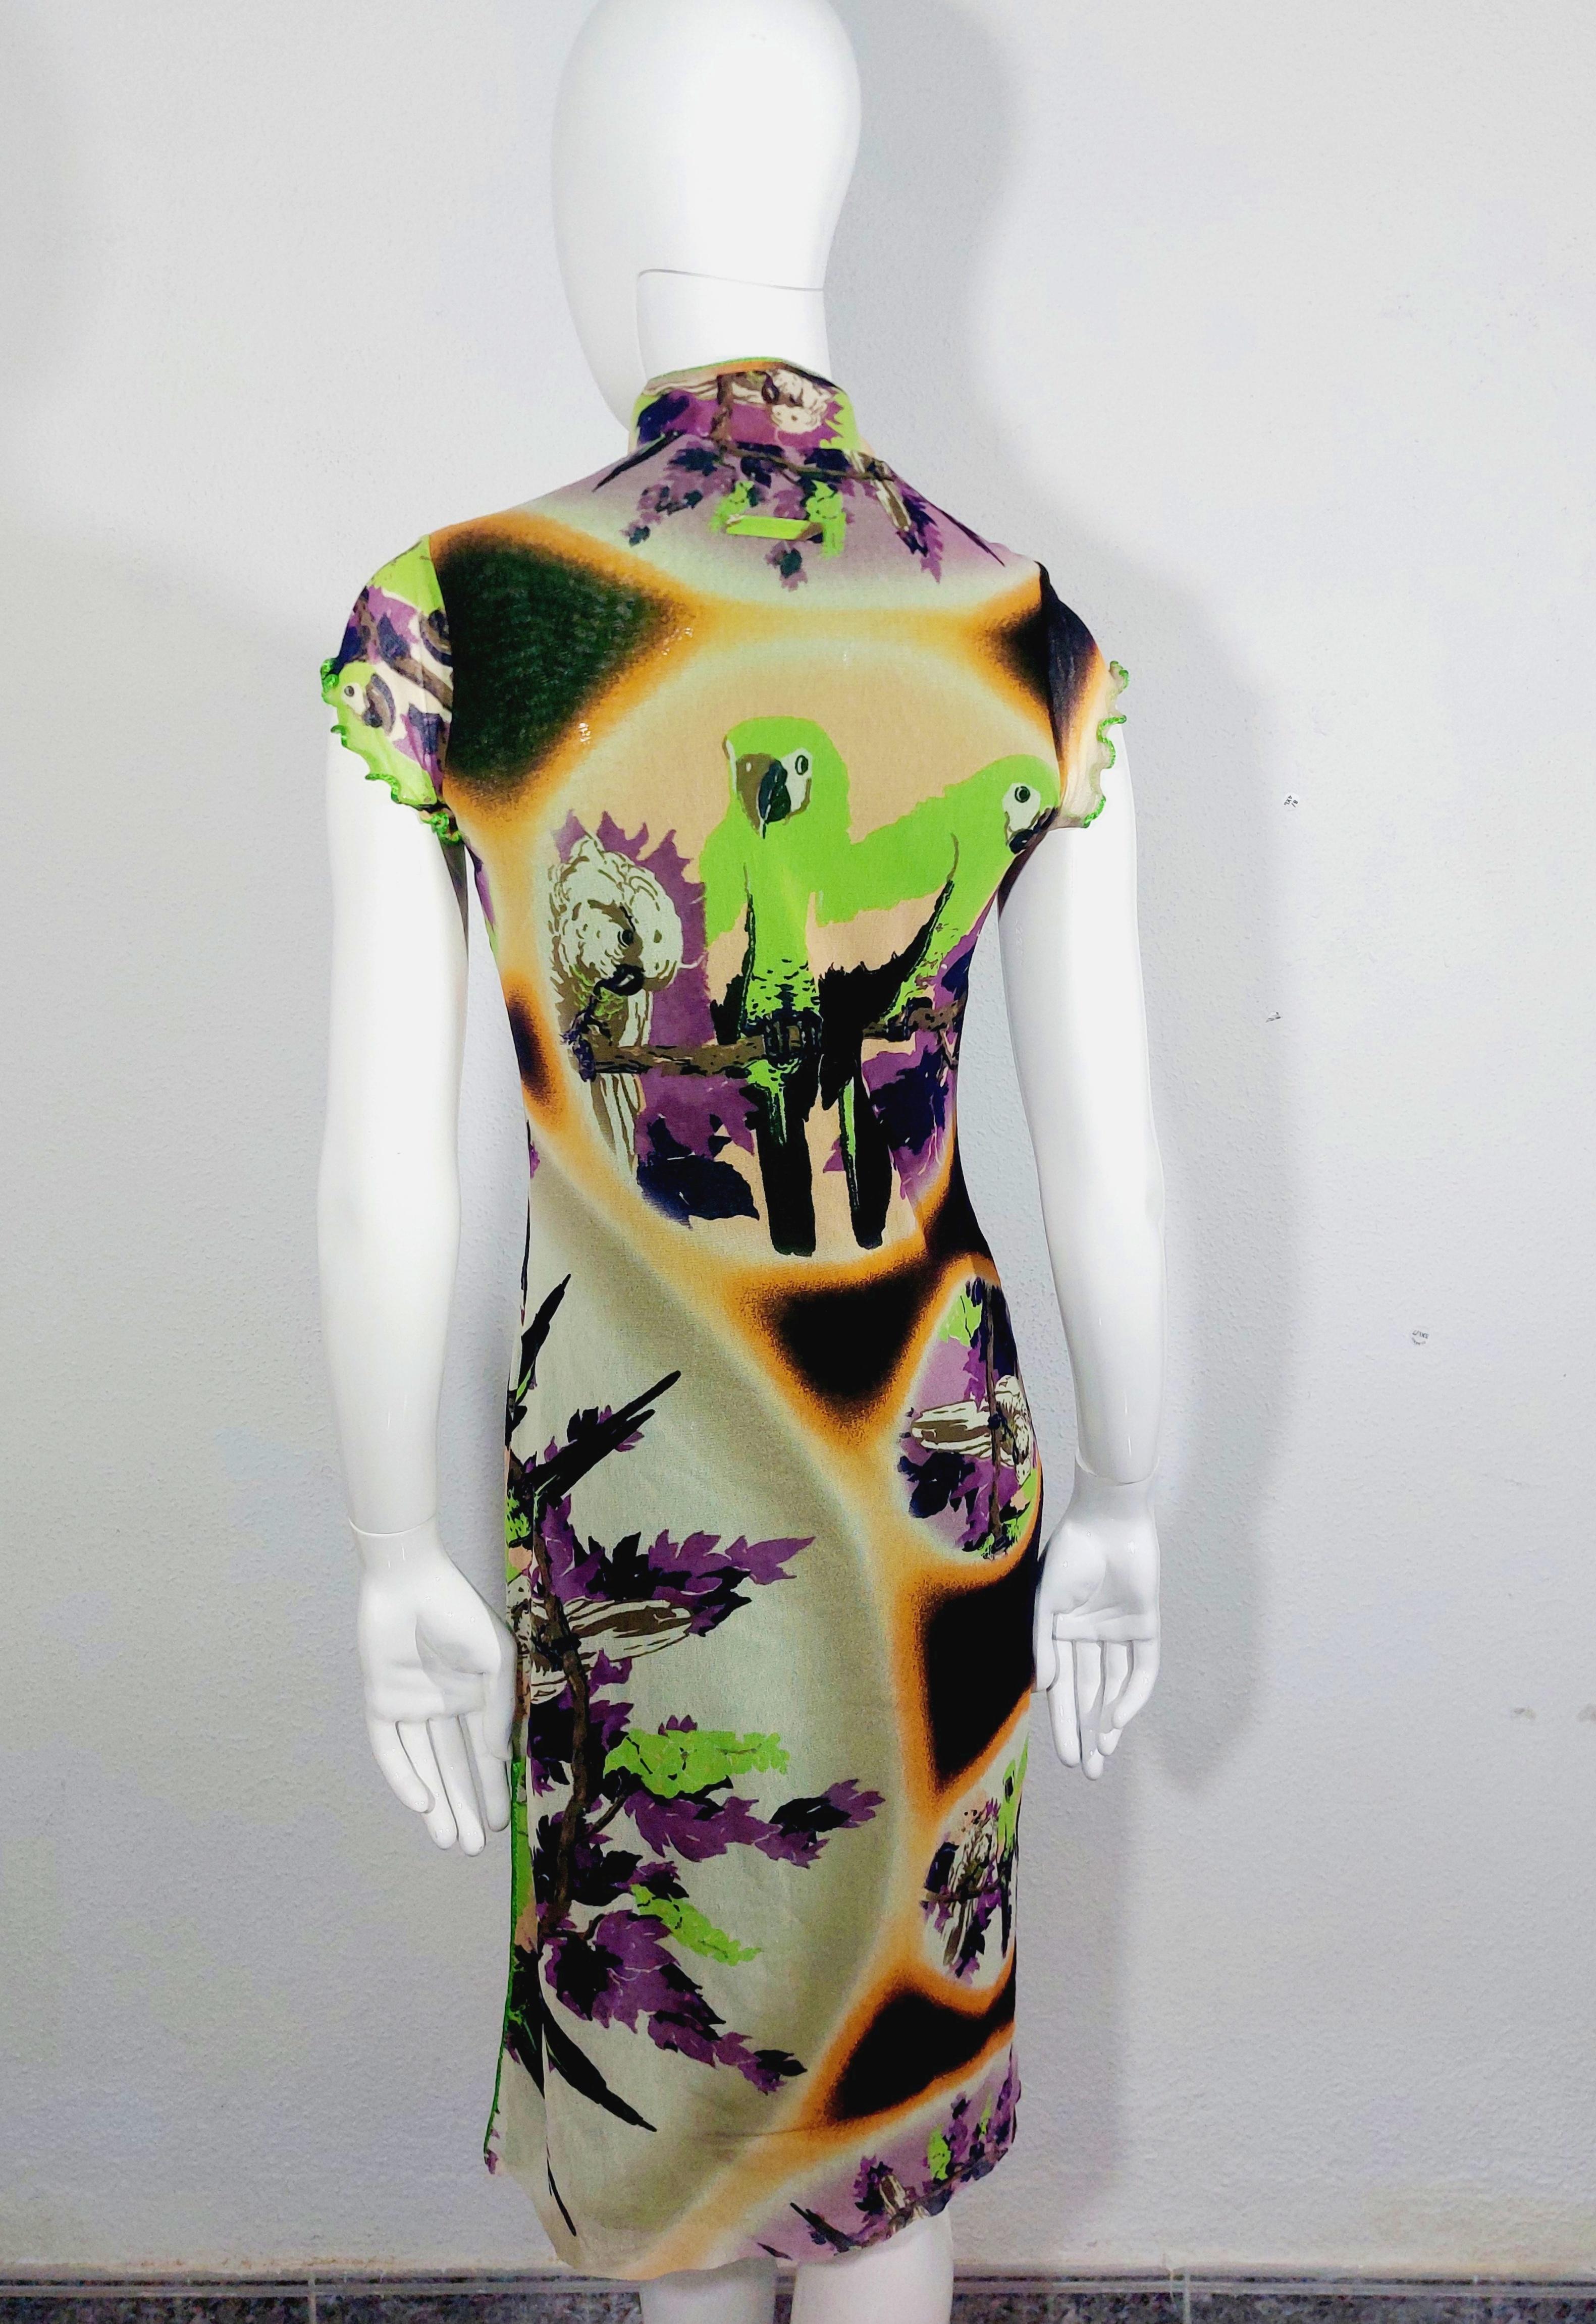 Jean Paul Gaultier Mesh Kimono Geisha Tropical Cheongsam Style Parrot Transparent Slit Dress
Robe midi Soleil de Jean Paul Gaultier en marron et multicolore avec imprimé perroquet sur l'ensemble du corps, col simili, découpe sur le devant, manches